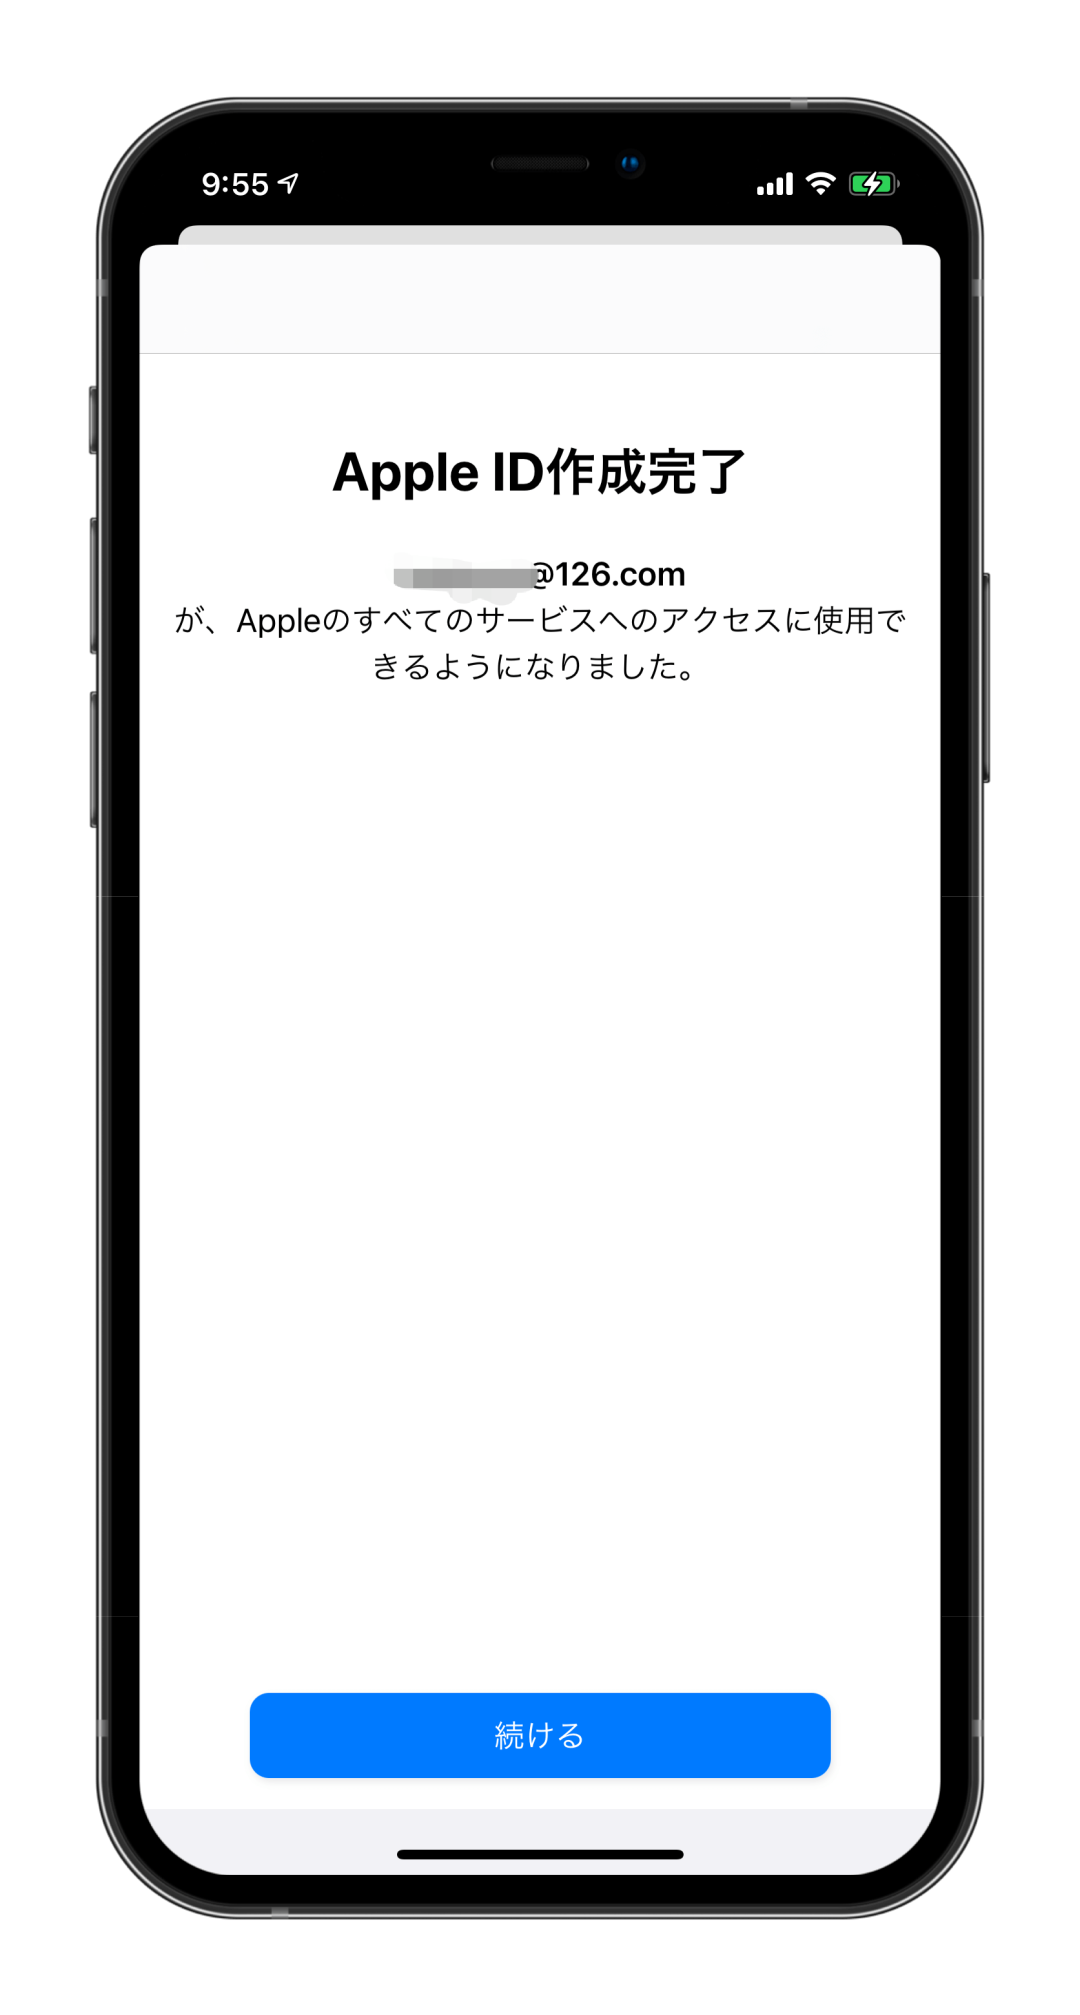 怎么注册韩国苹果id账号_注册苹果id账号检查过不去_注册苹果id账号教程